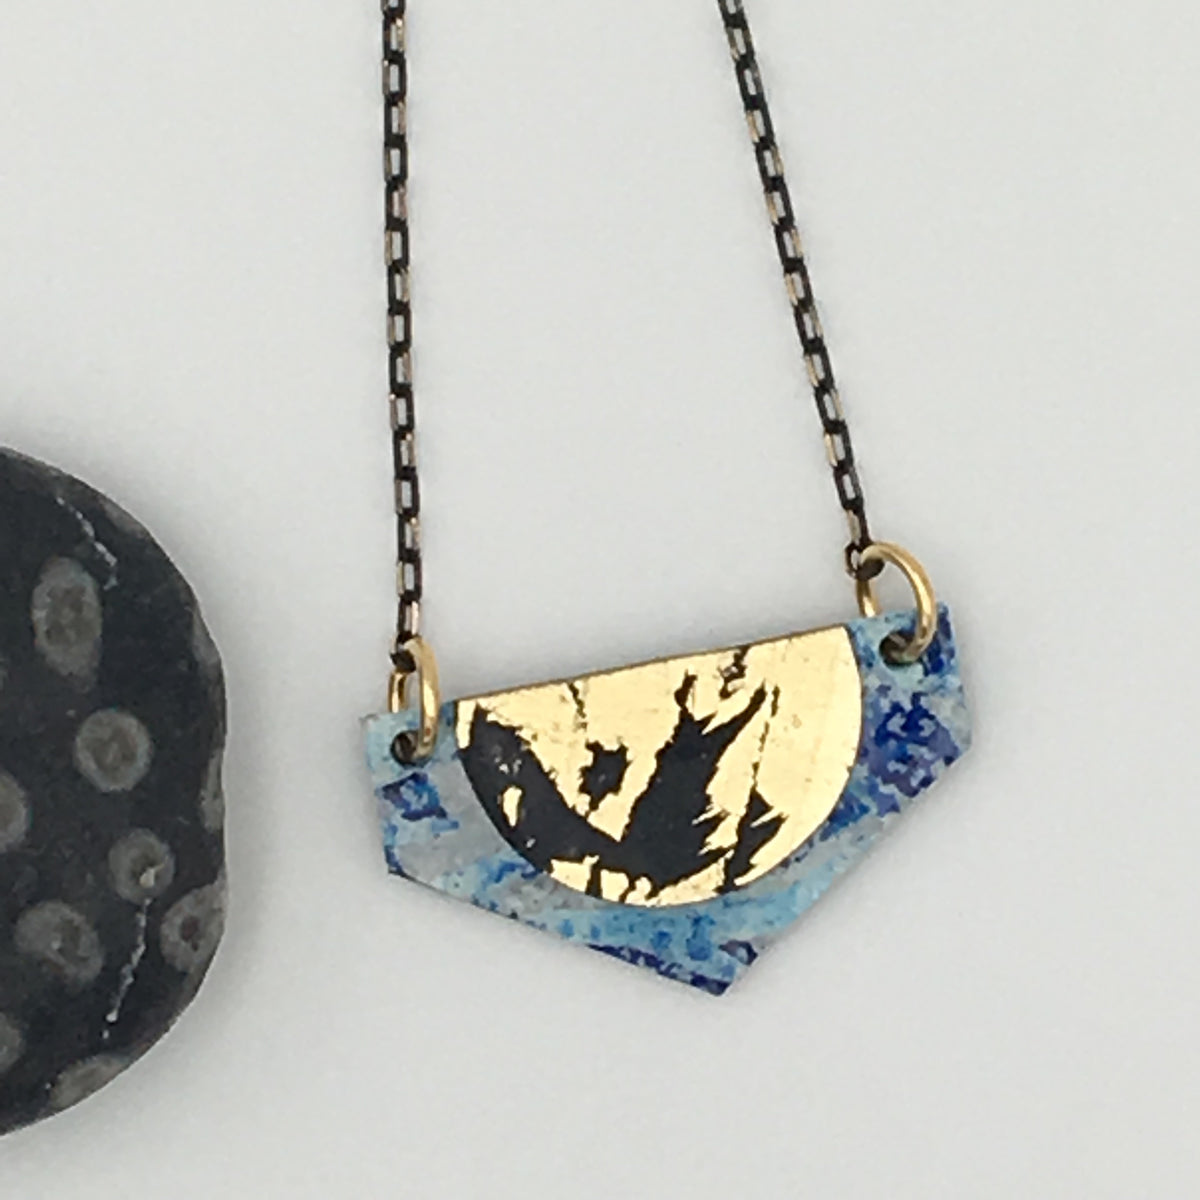 Lorette batik textile necklace in blue/gold/black